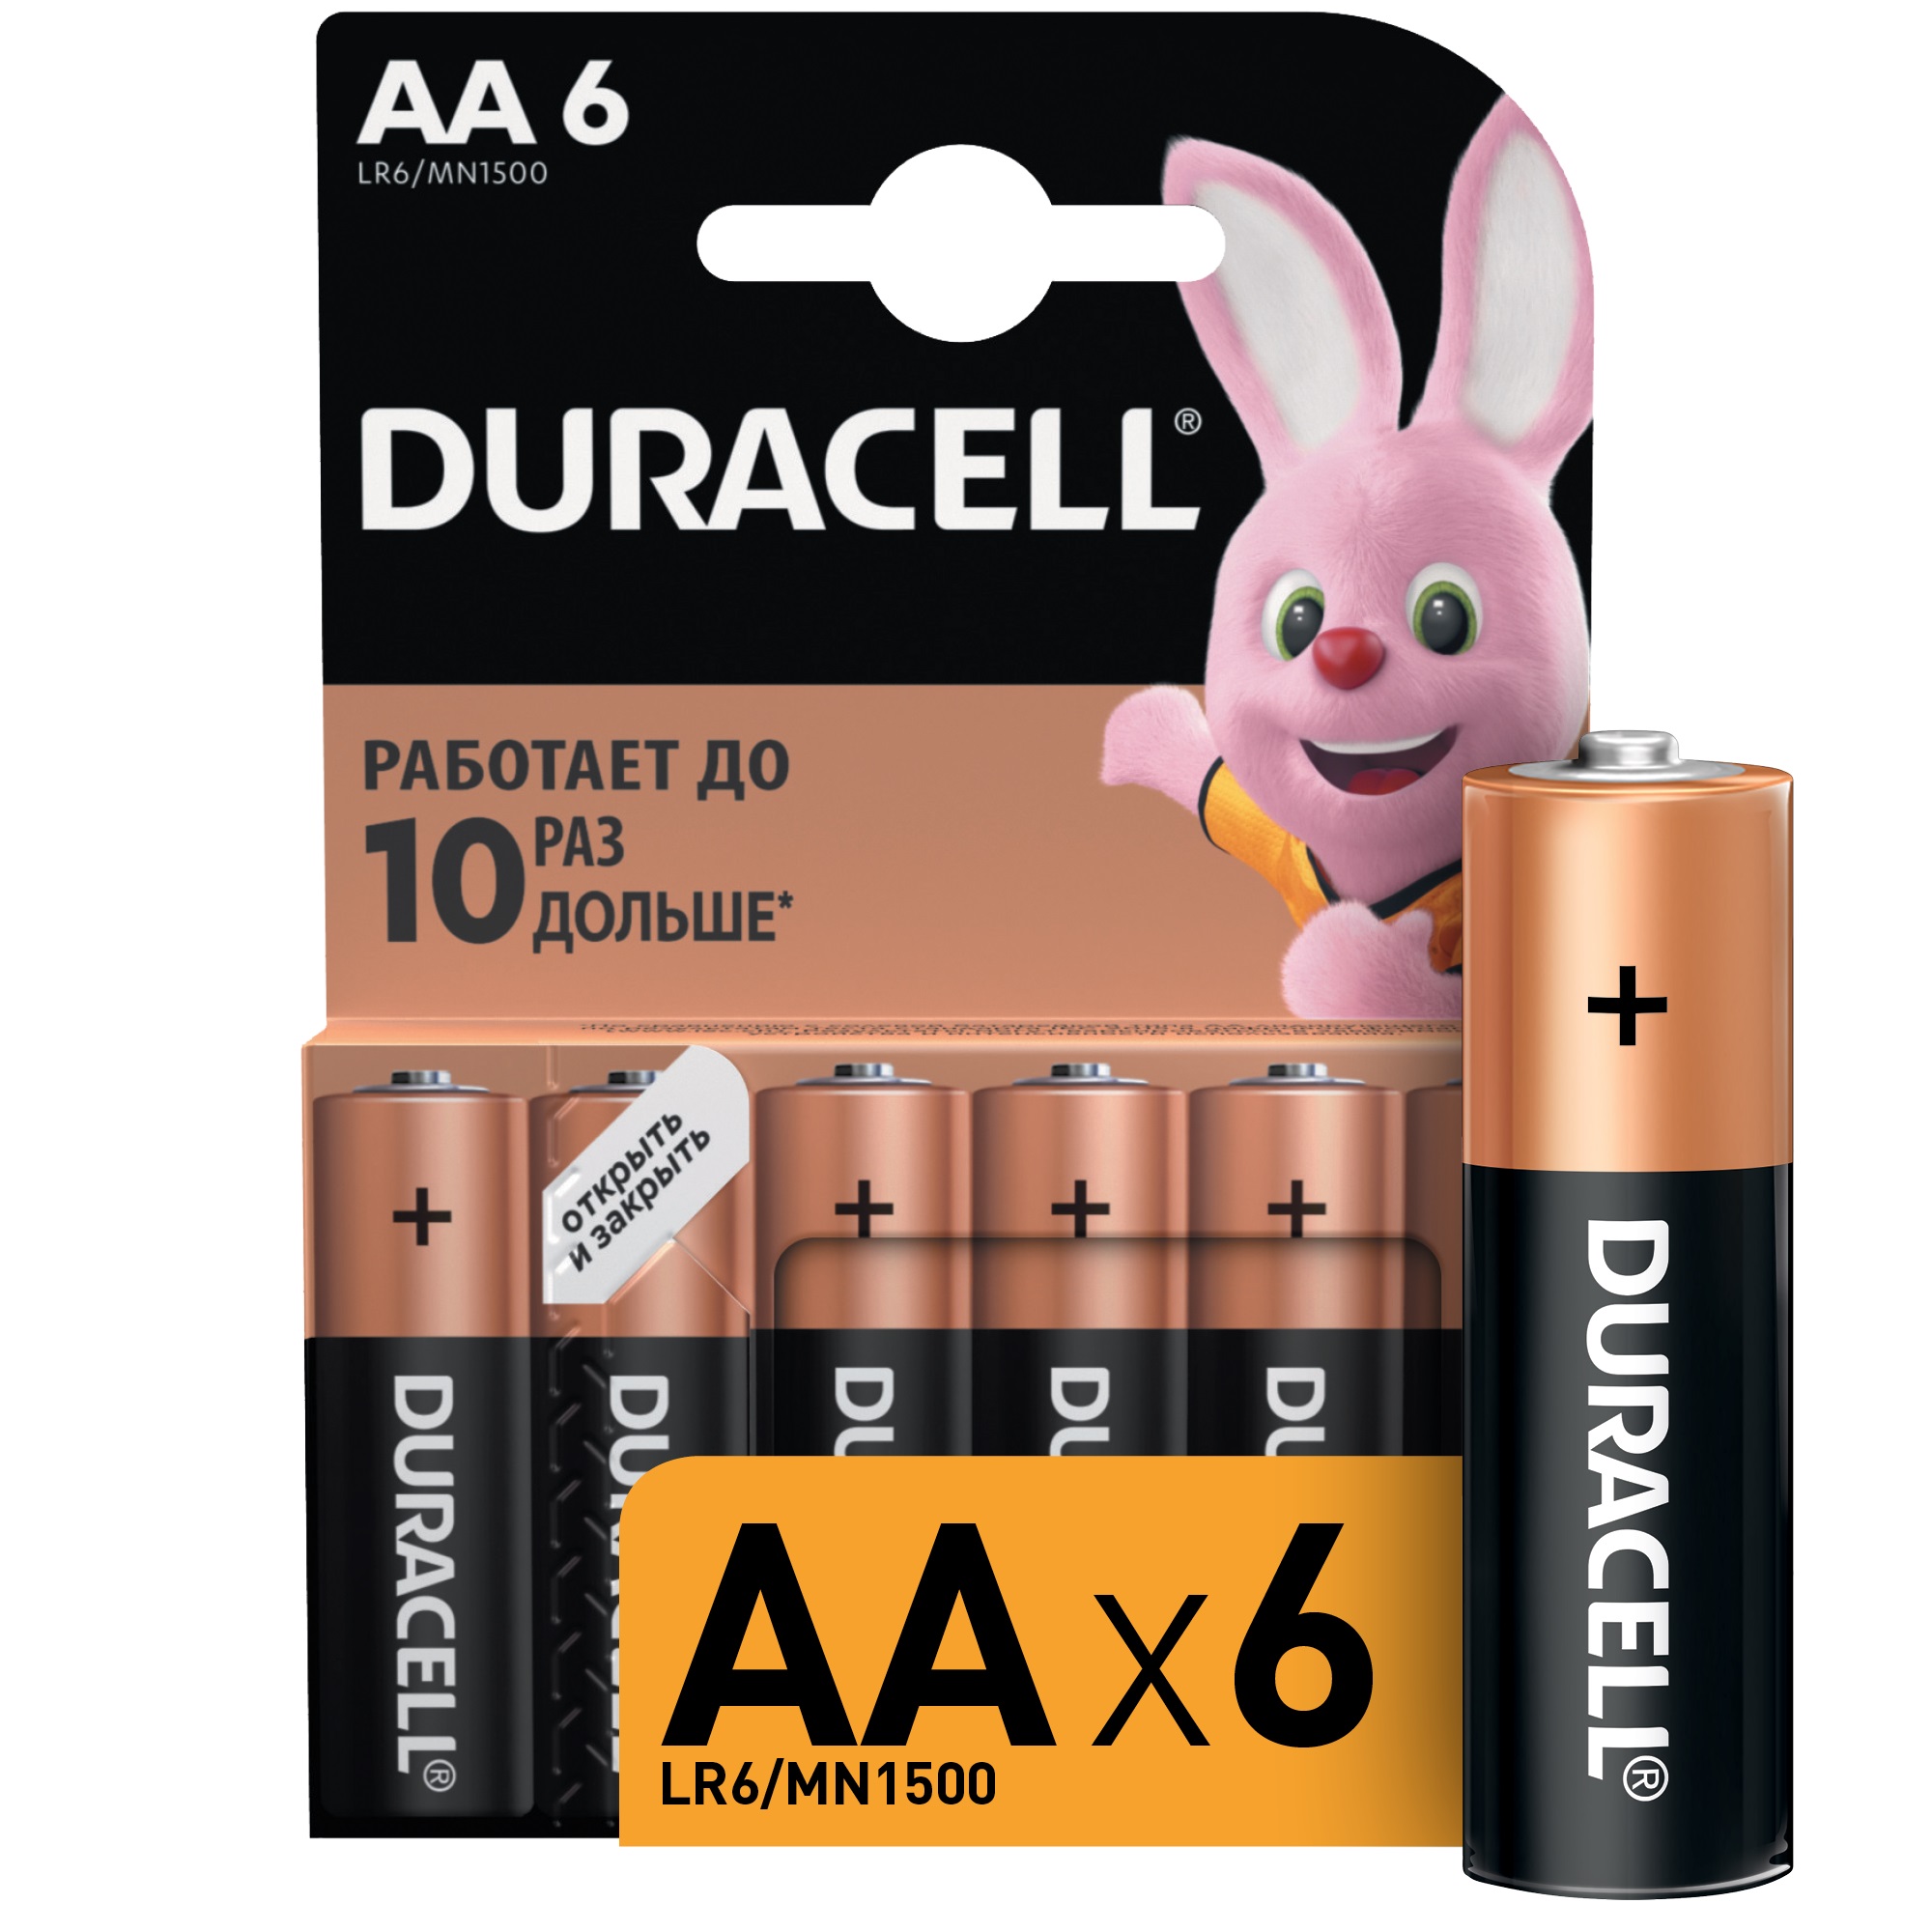 Батарейки Duracell АА 1,5В 6 шт duracell батарейки 2шт тип aa bl